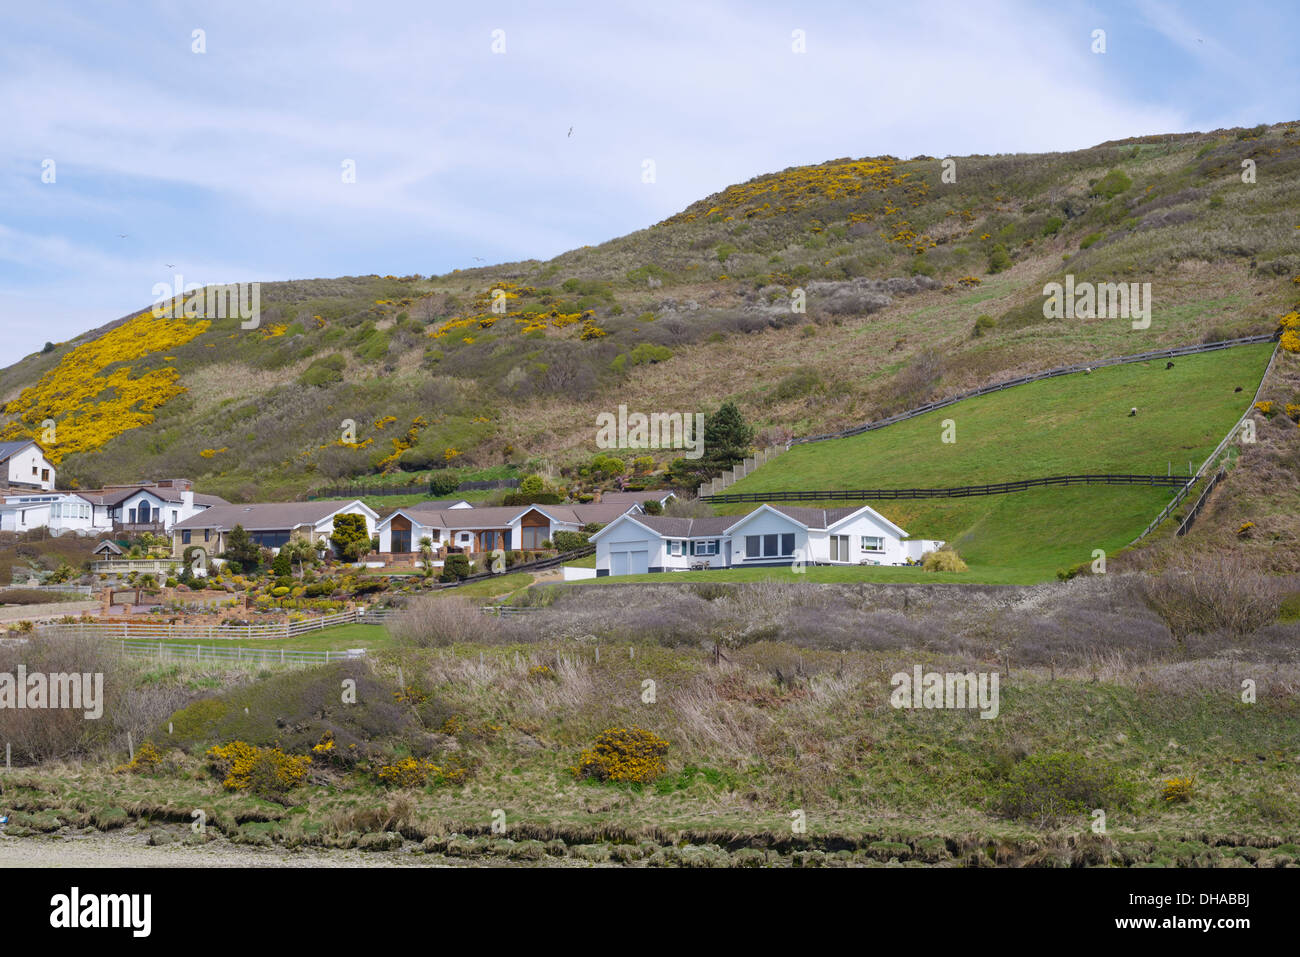 Proprietà privata proprietario occupò gran piano singolo bungalows sul bordo del fiume Ystwyth, Aberystwyth, Wales, Regno Unito Foto Stock